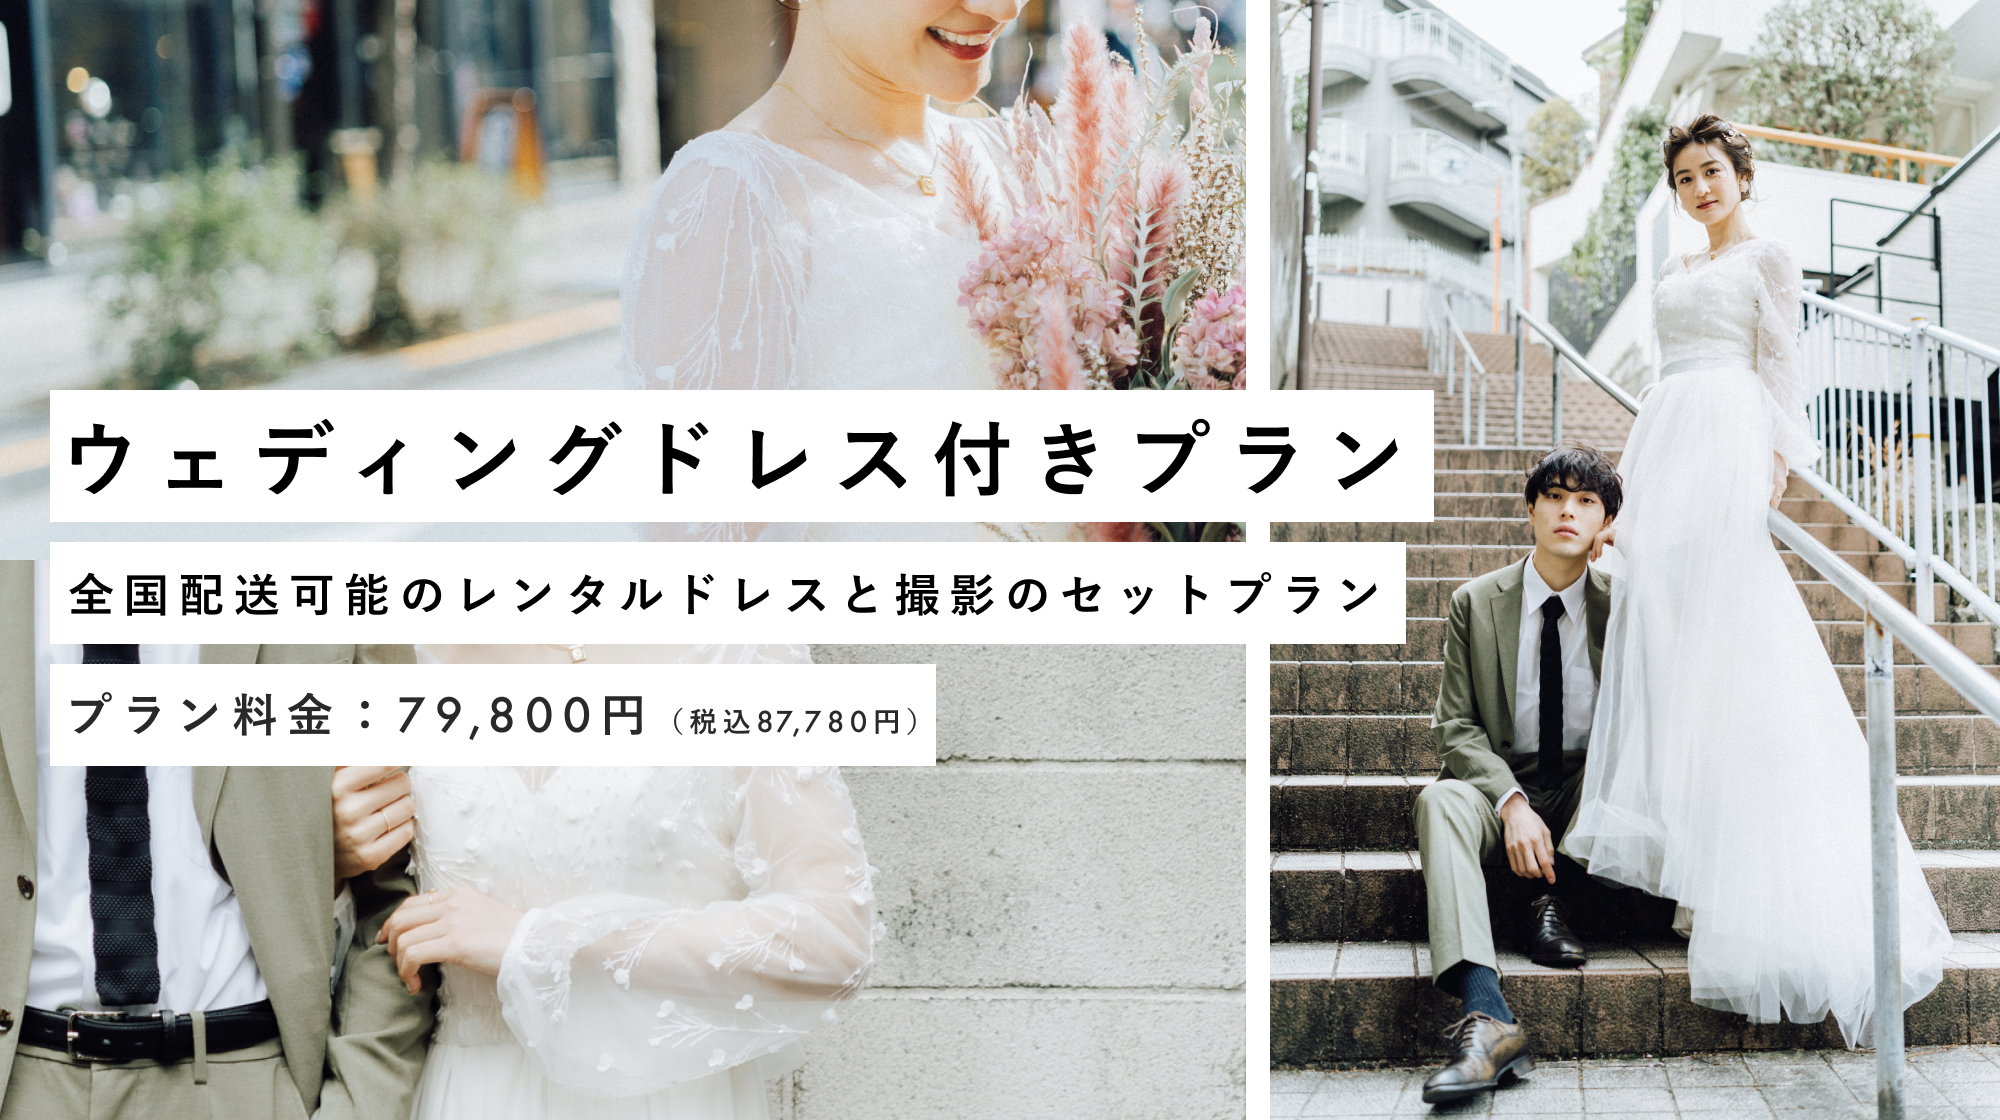 【1万円OFF割引】レンタルドレスと撮影がセットになった"ウェディングドレス付きプラン"受付中！